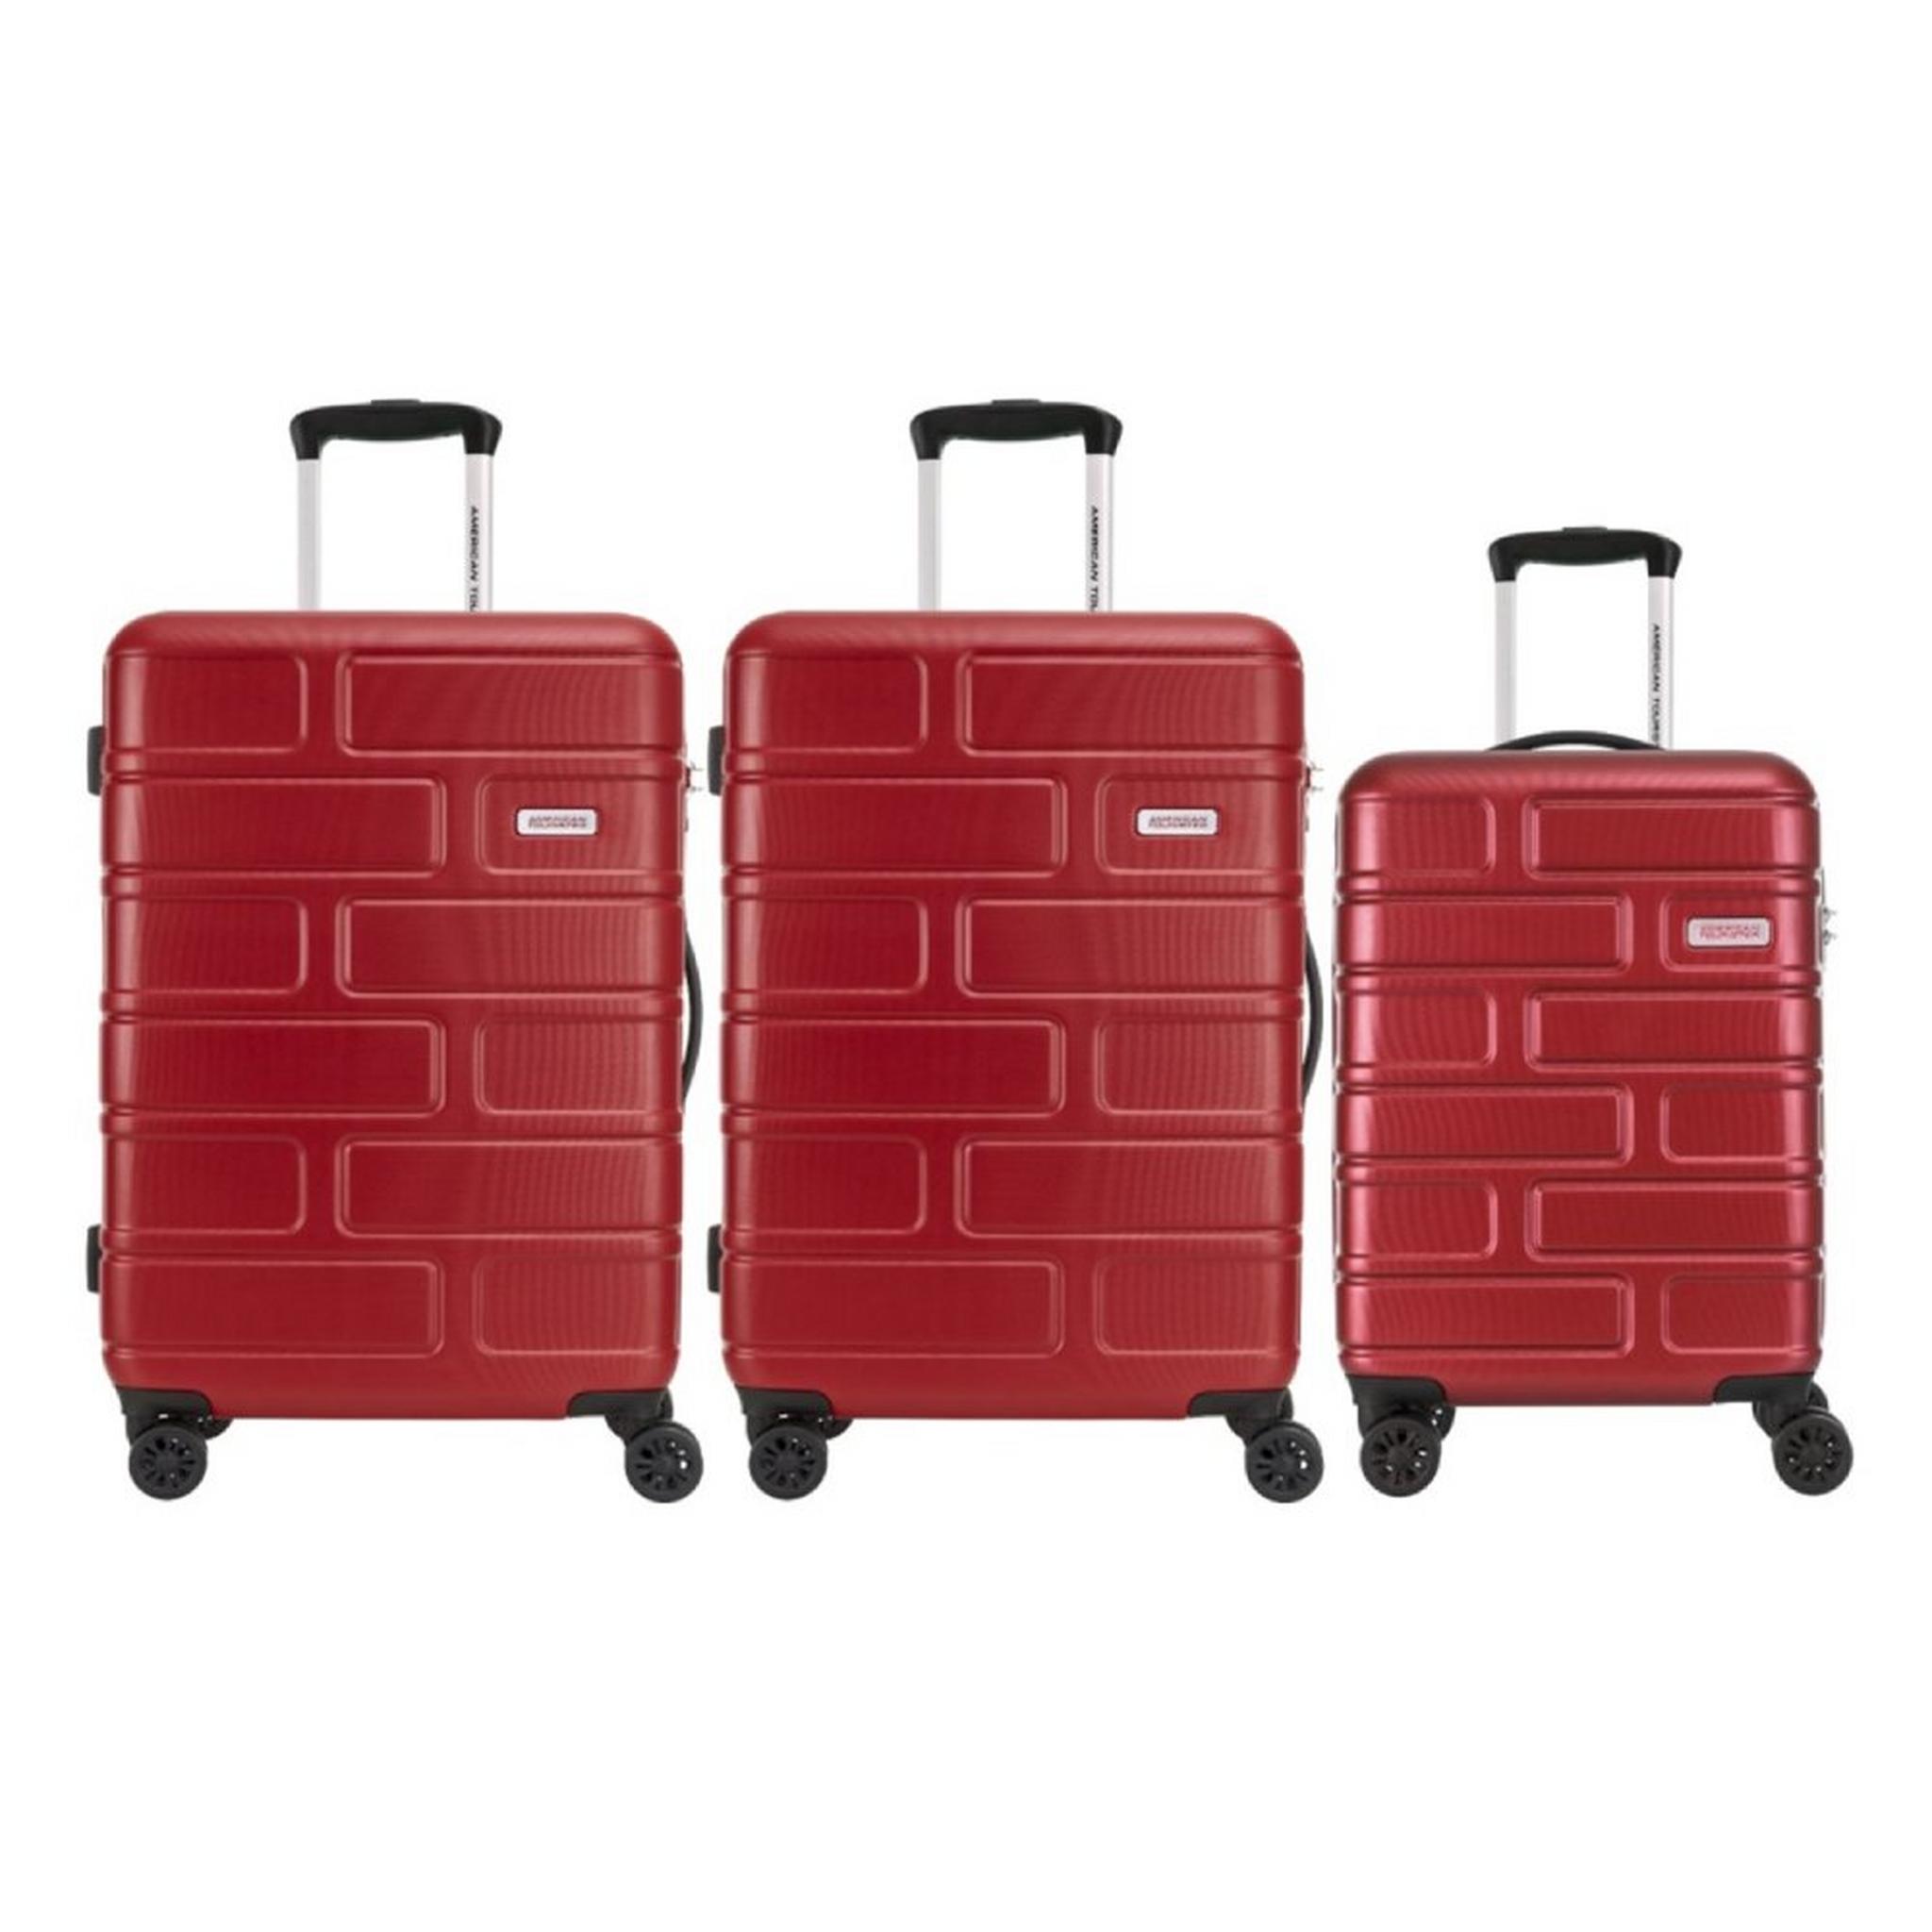 طقم حقائب سفر بريكلين بجوانب صلبة وعجلات دوارة من أمريكان توريستر،مكون من حقيبتين متوسطتين وواحدة صغيرة، GE3X80006MMS – أحمر